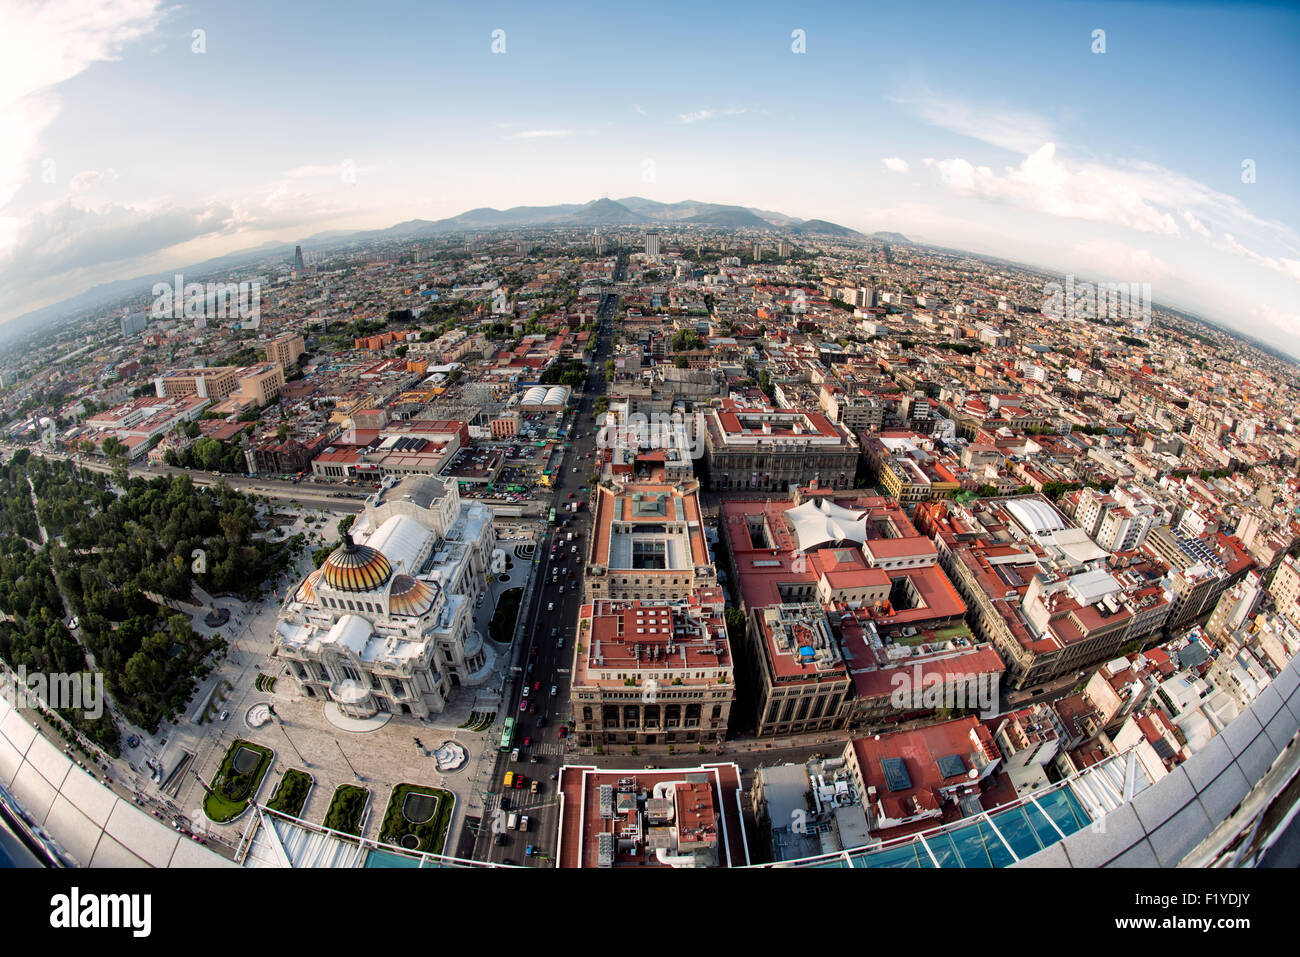 MEXICO, Mexique — vue aérienne de Mexico, présentant le paysage urbain tentaculaire du sommet de la Torre Latinoamericana. Ce gratte-ciel emblématique, autrefois le plus haut d'Amérique latine, offre des perspectives inégalées sur l'étendue vaste et la grille urbaine complexe de la ville. Banque D'Images